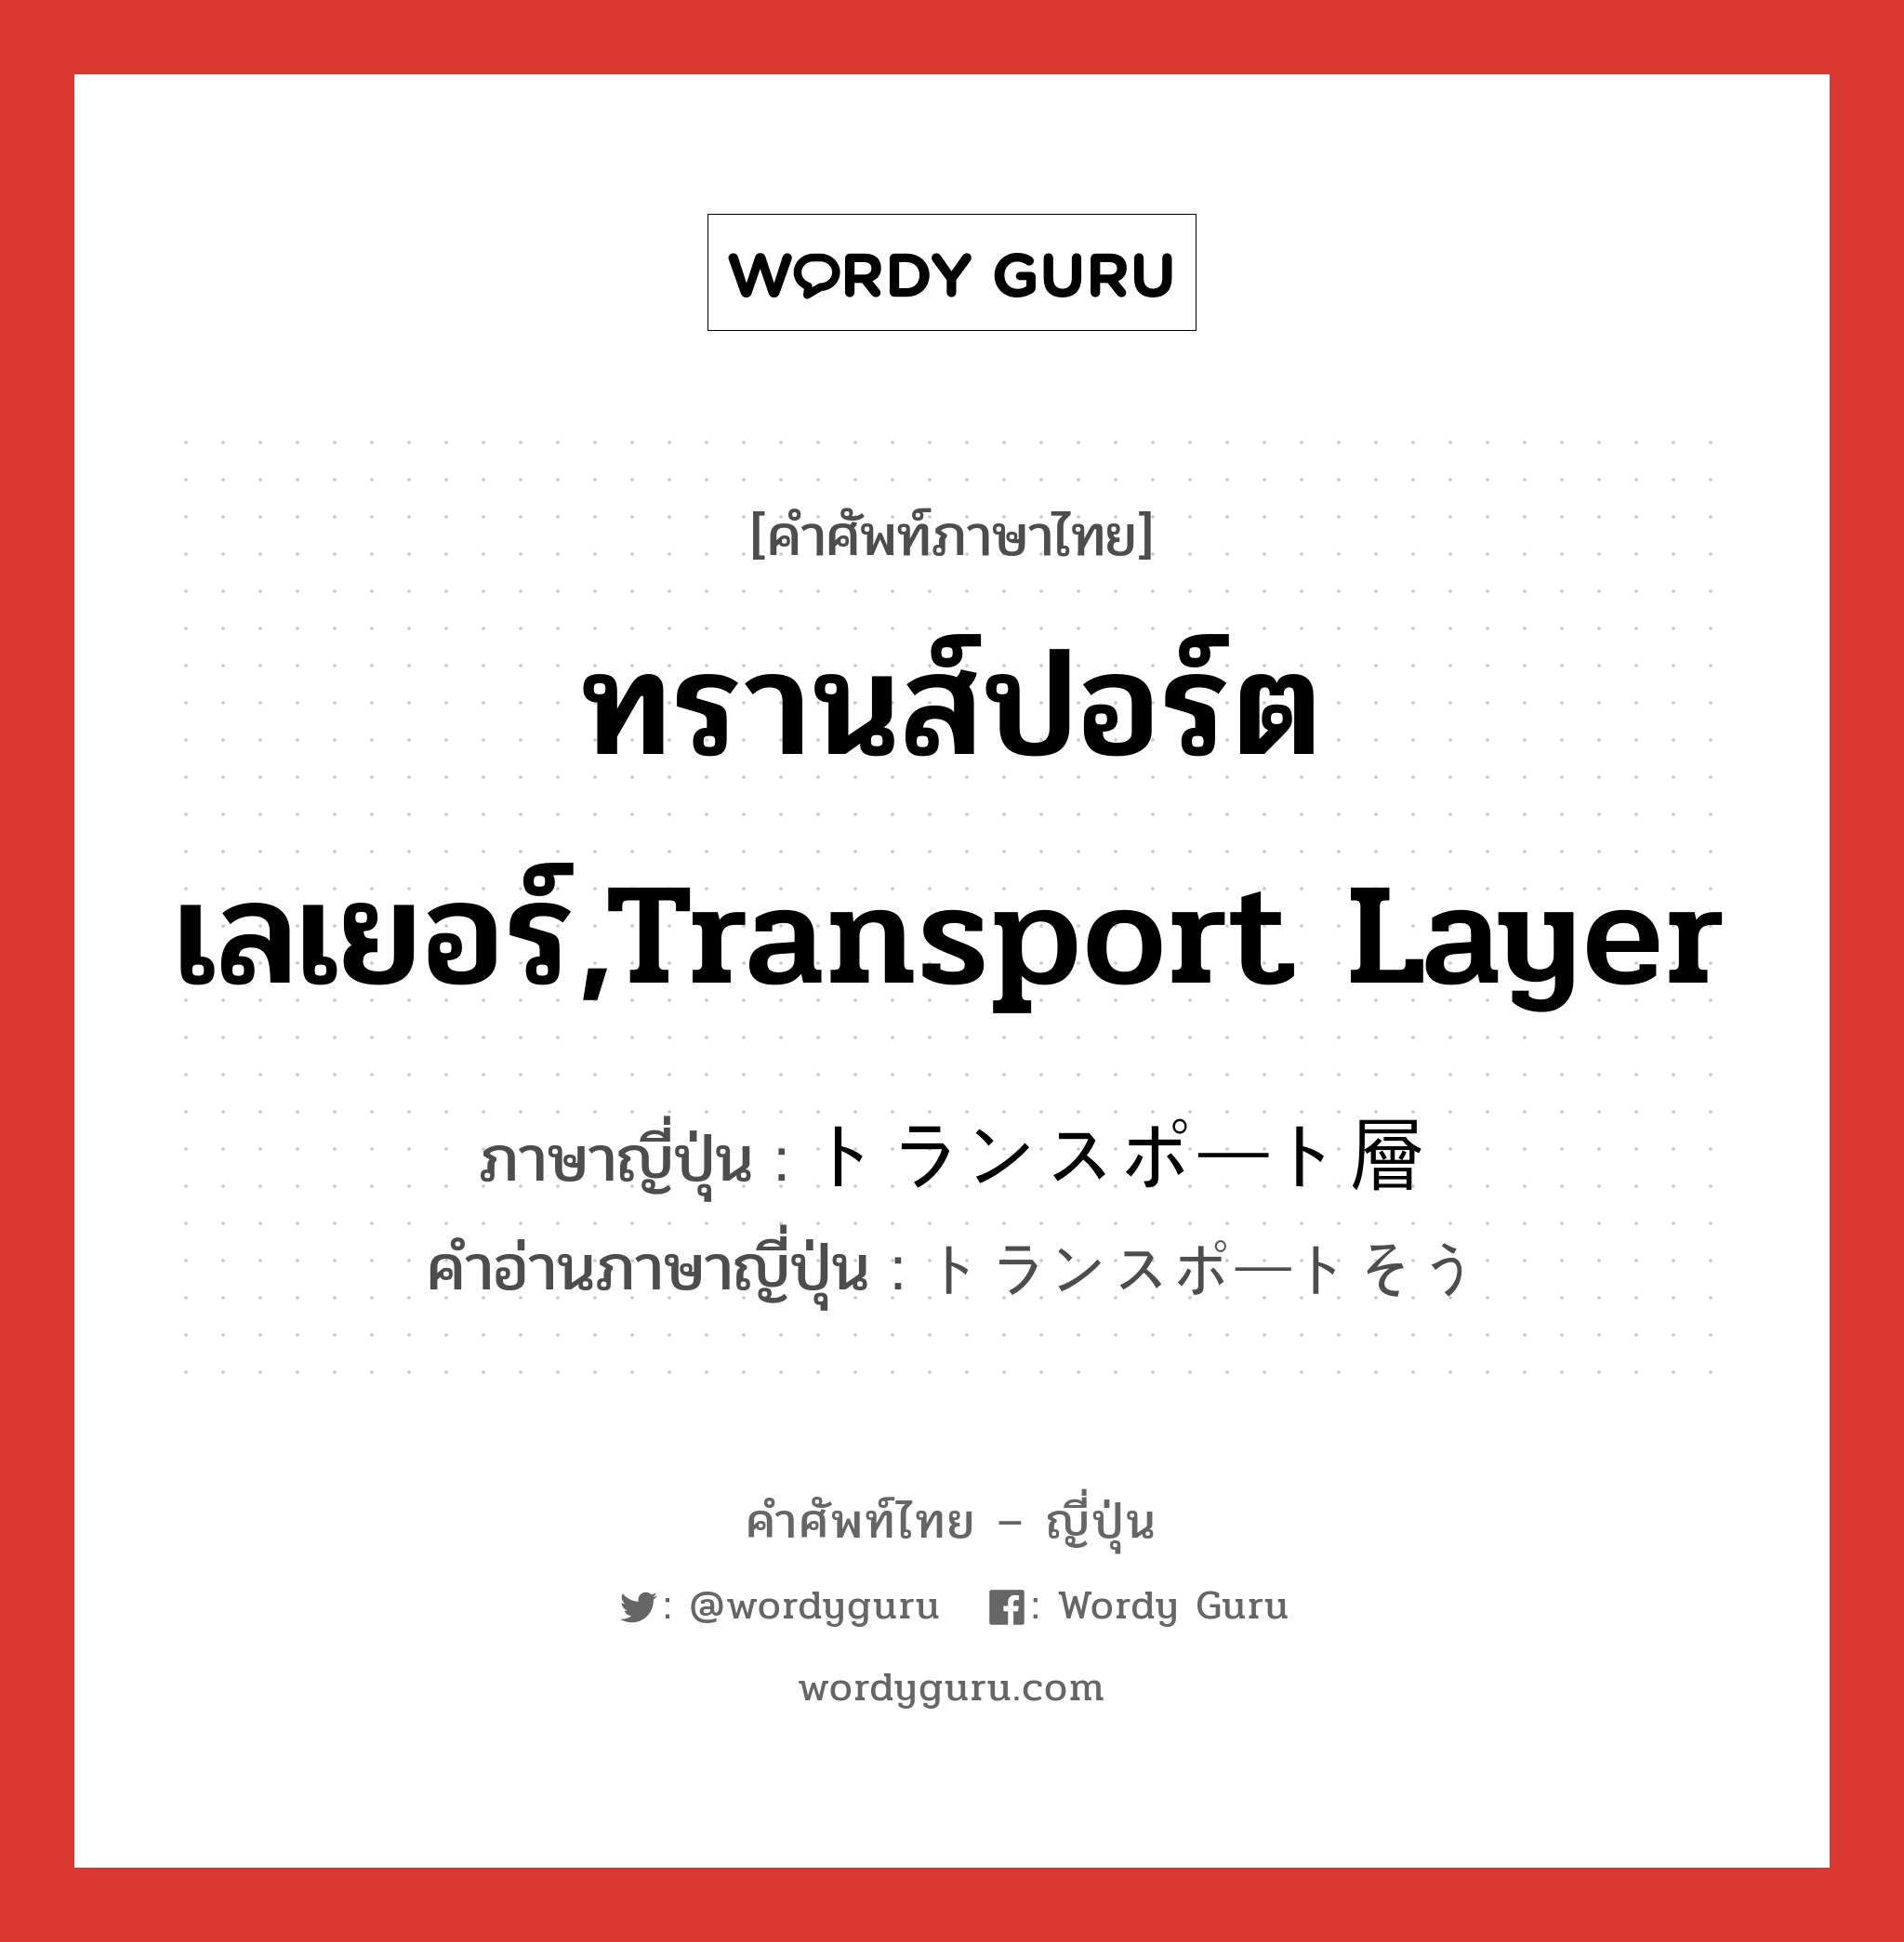 ทรานส์ปอร์ตเลเยอร์,transport layer ภาษาญี่ปุ่นคืออะไร, คำศัพท์ภาษาไทย - ญี่ปุ่น ทรานส์ปอร์ตเลเยอร์,transport layer ภาษาญี่ปุ่น トランスポート層 คำอ่านภาษาญี่ปุ่น トランスポートそう หมวด n หมวด n